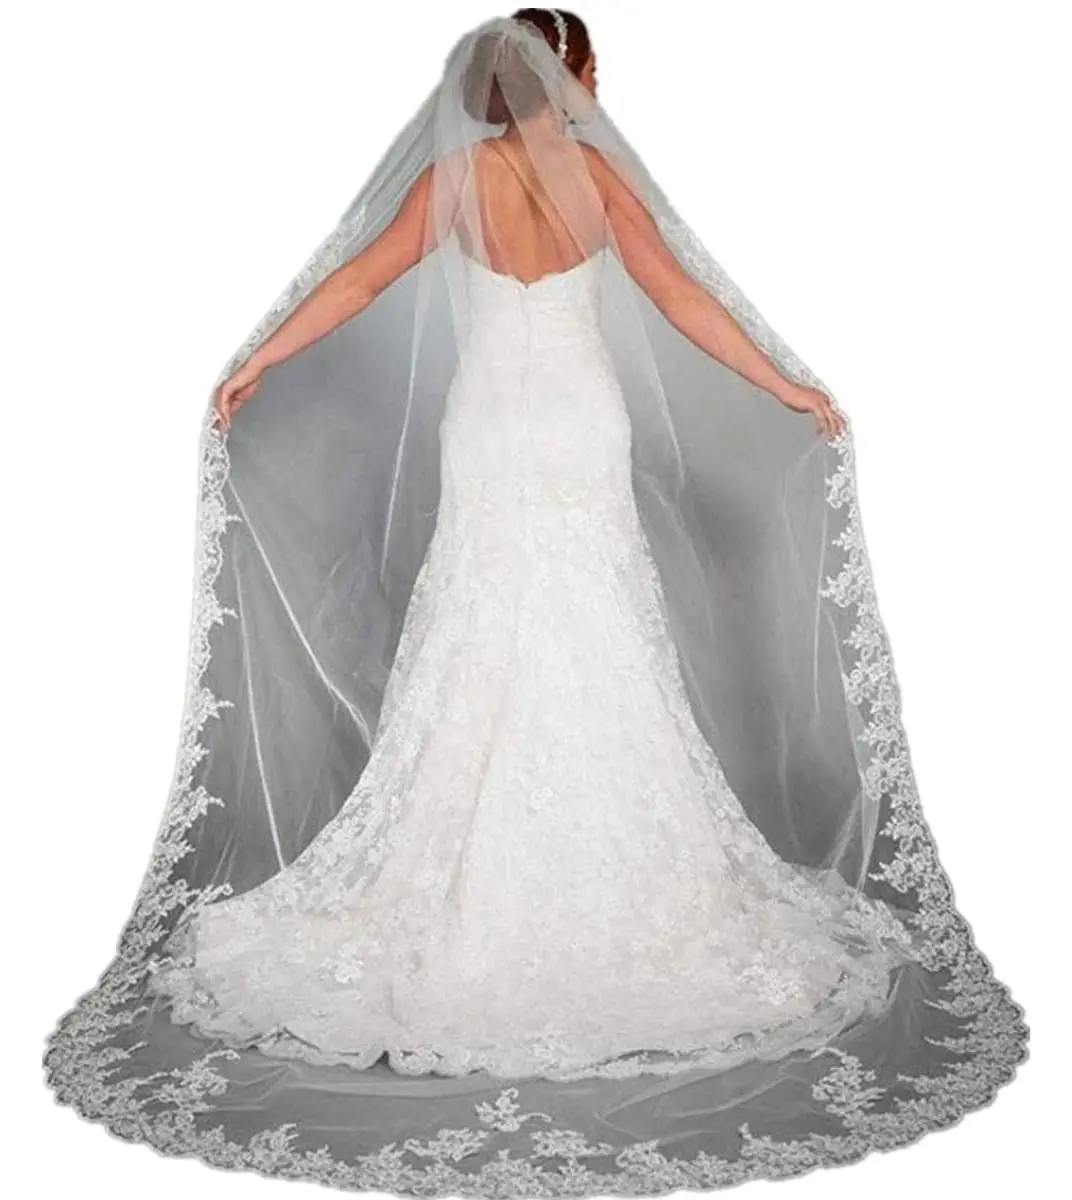 

Women's Applique Bride Wedding Long Chapel Length 1 Tier Bridal Veil Soft Tulle Hair Accessories 2022